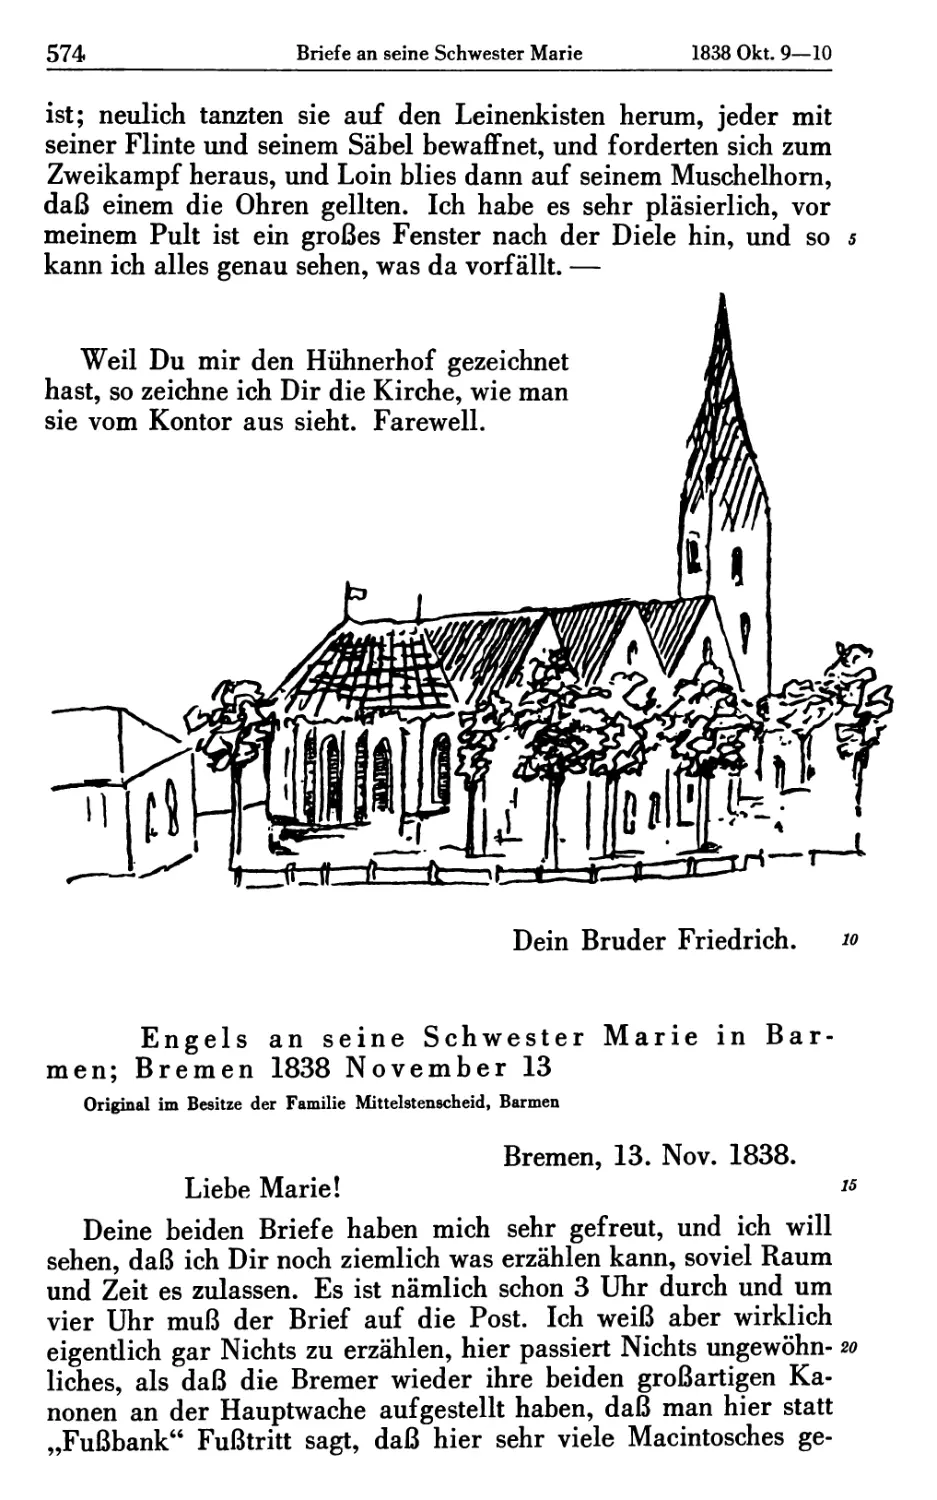 Engels an seine Schwester Marie in Barmen; Bremen 1838 November 13